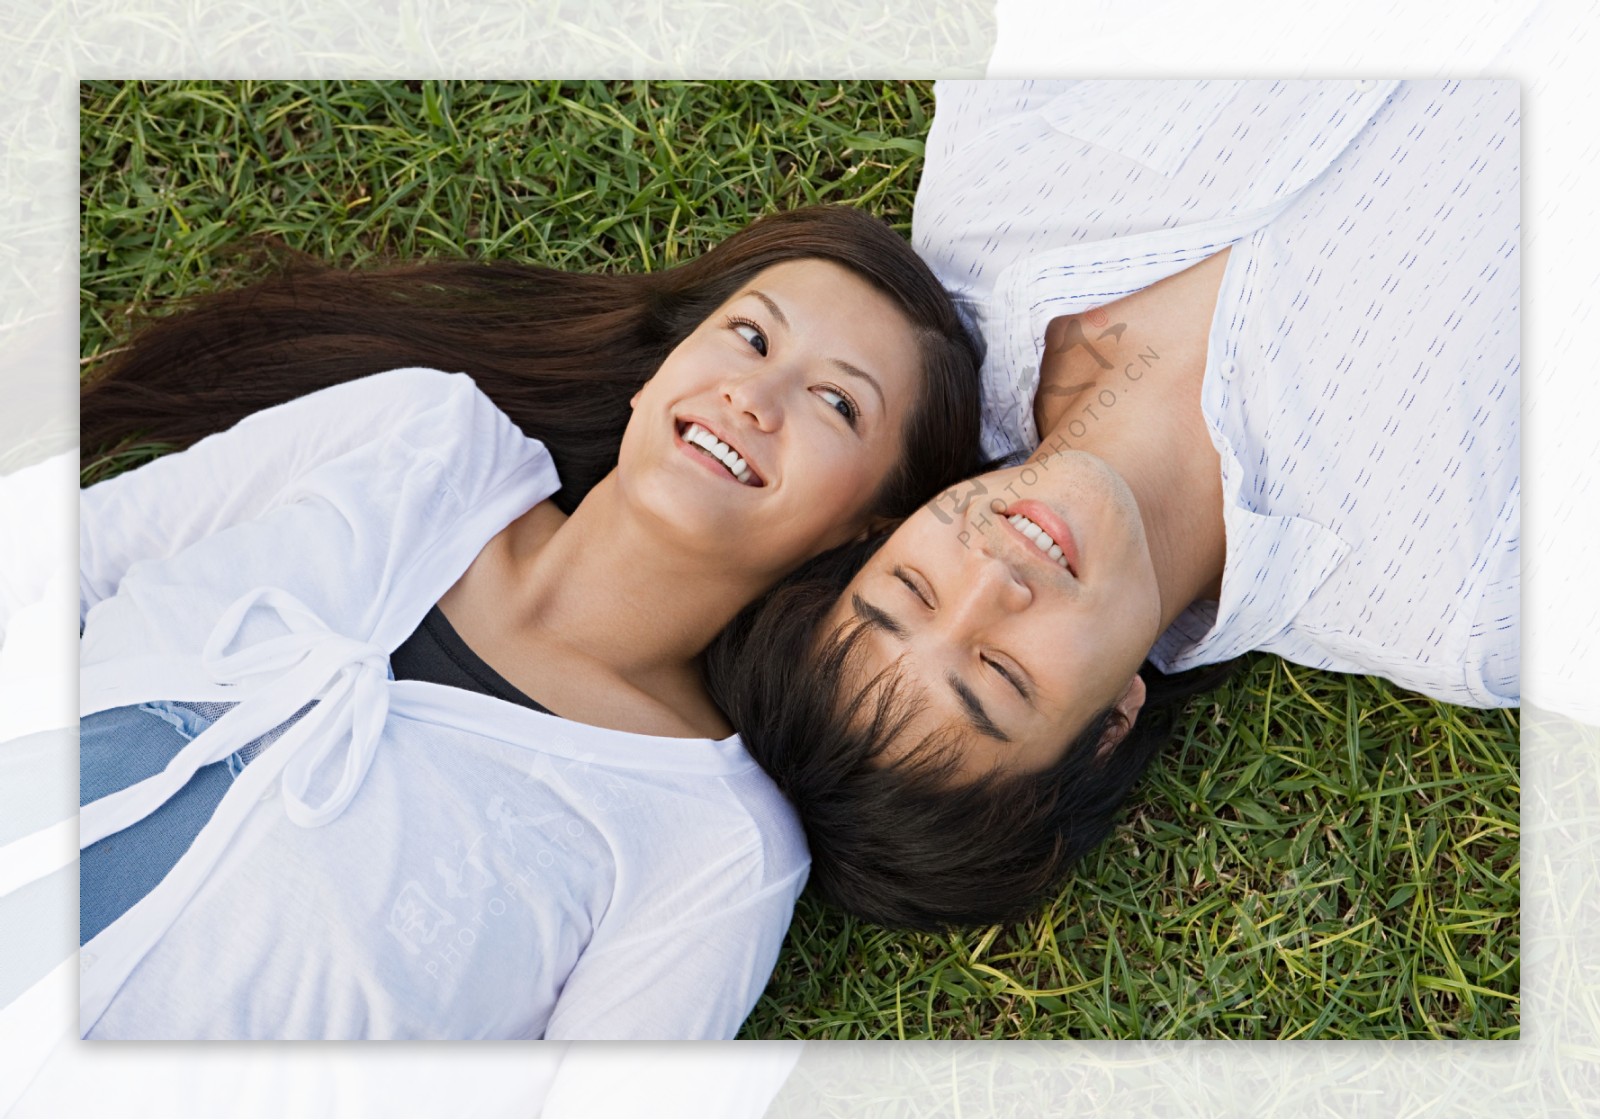 躺在草地上幸福微笑的情侣图片图片